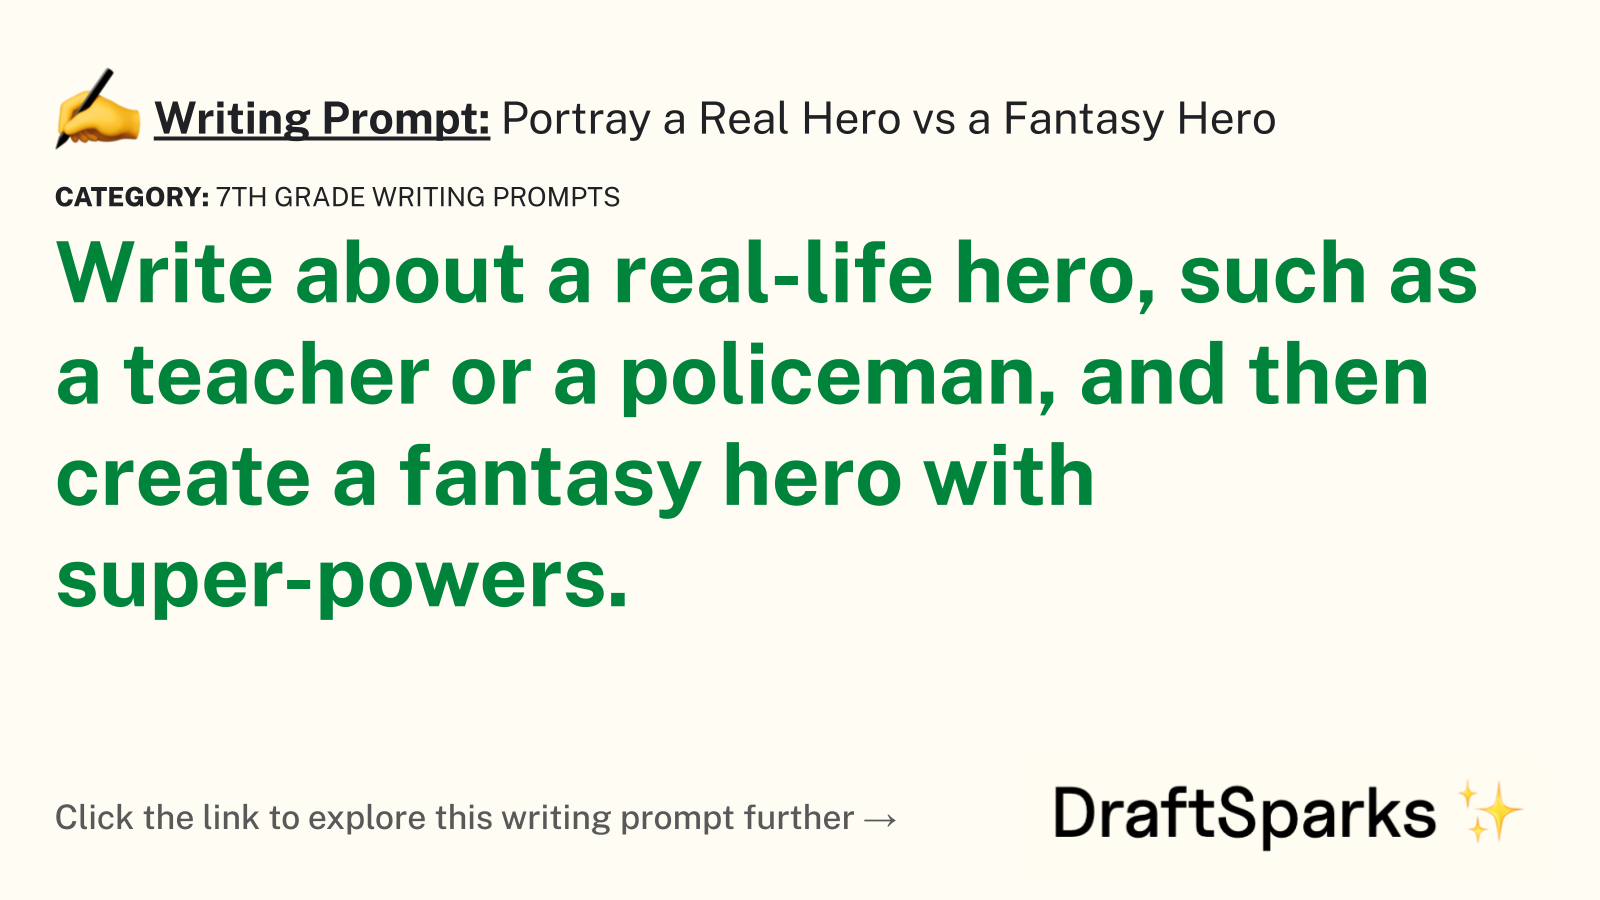 Portray a Real Hero vs a Fantasy Hero